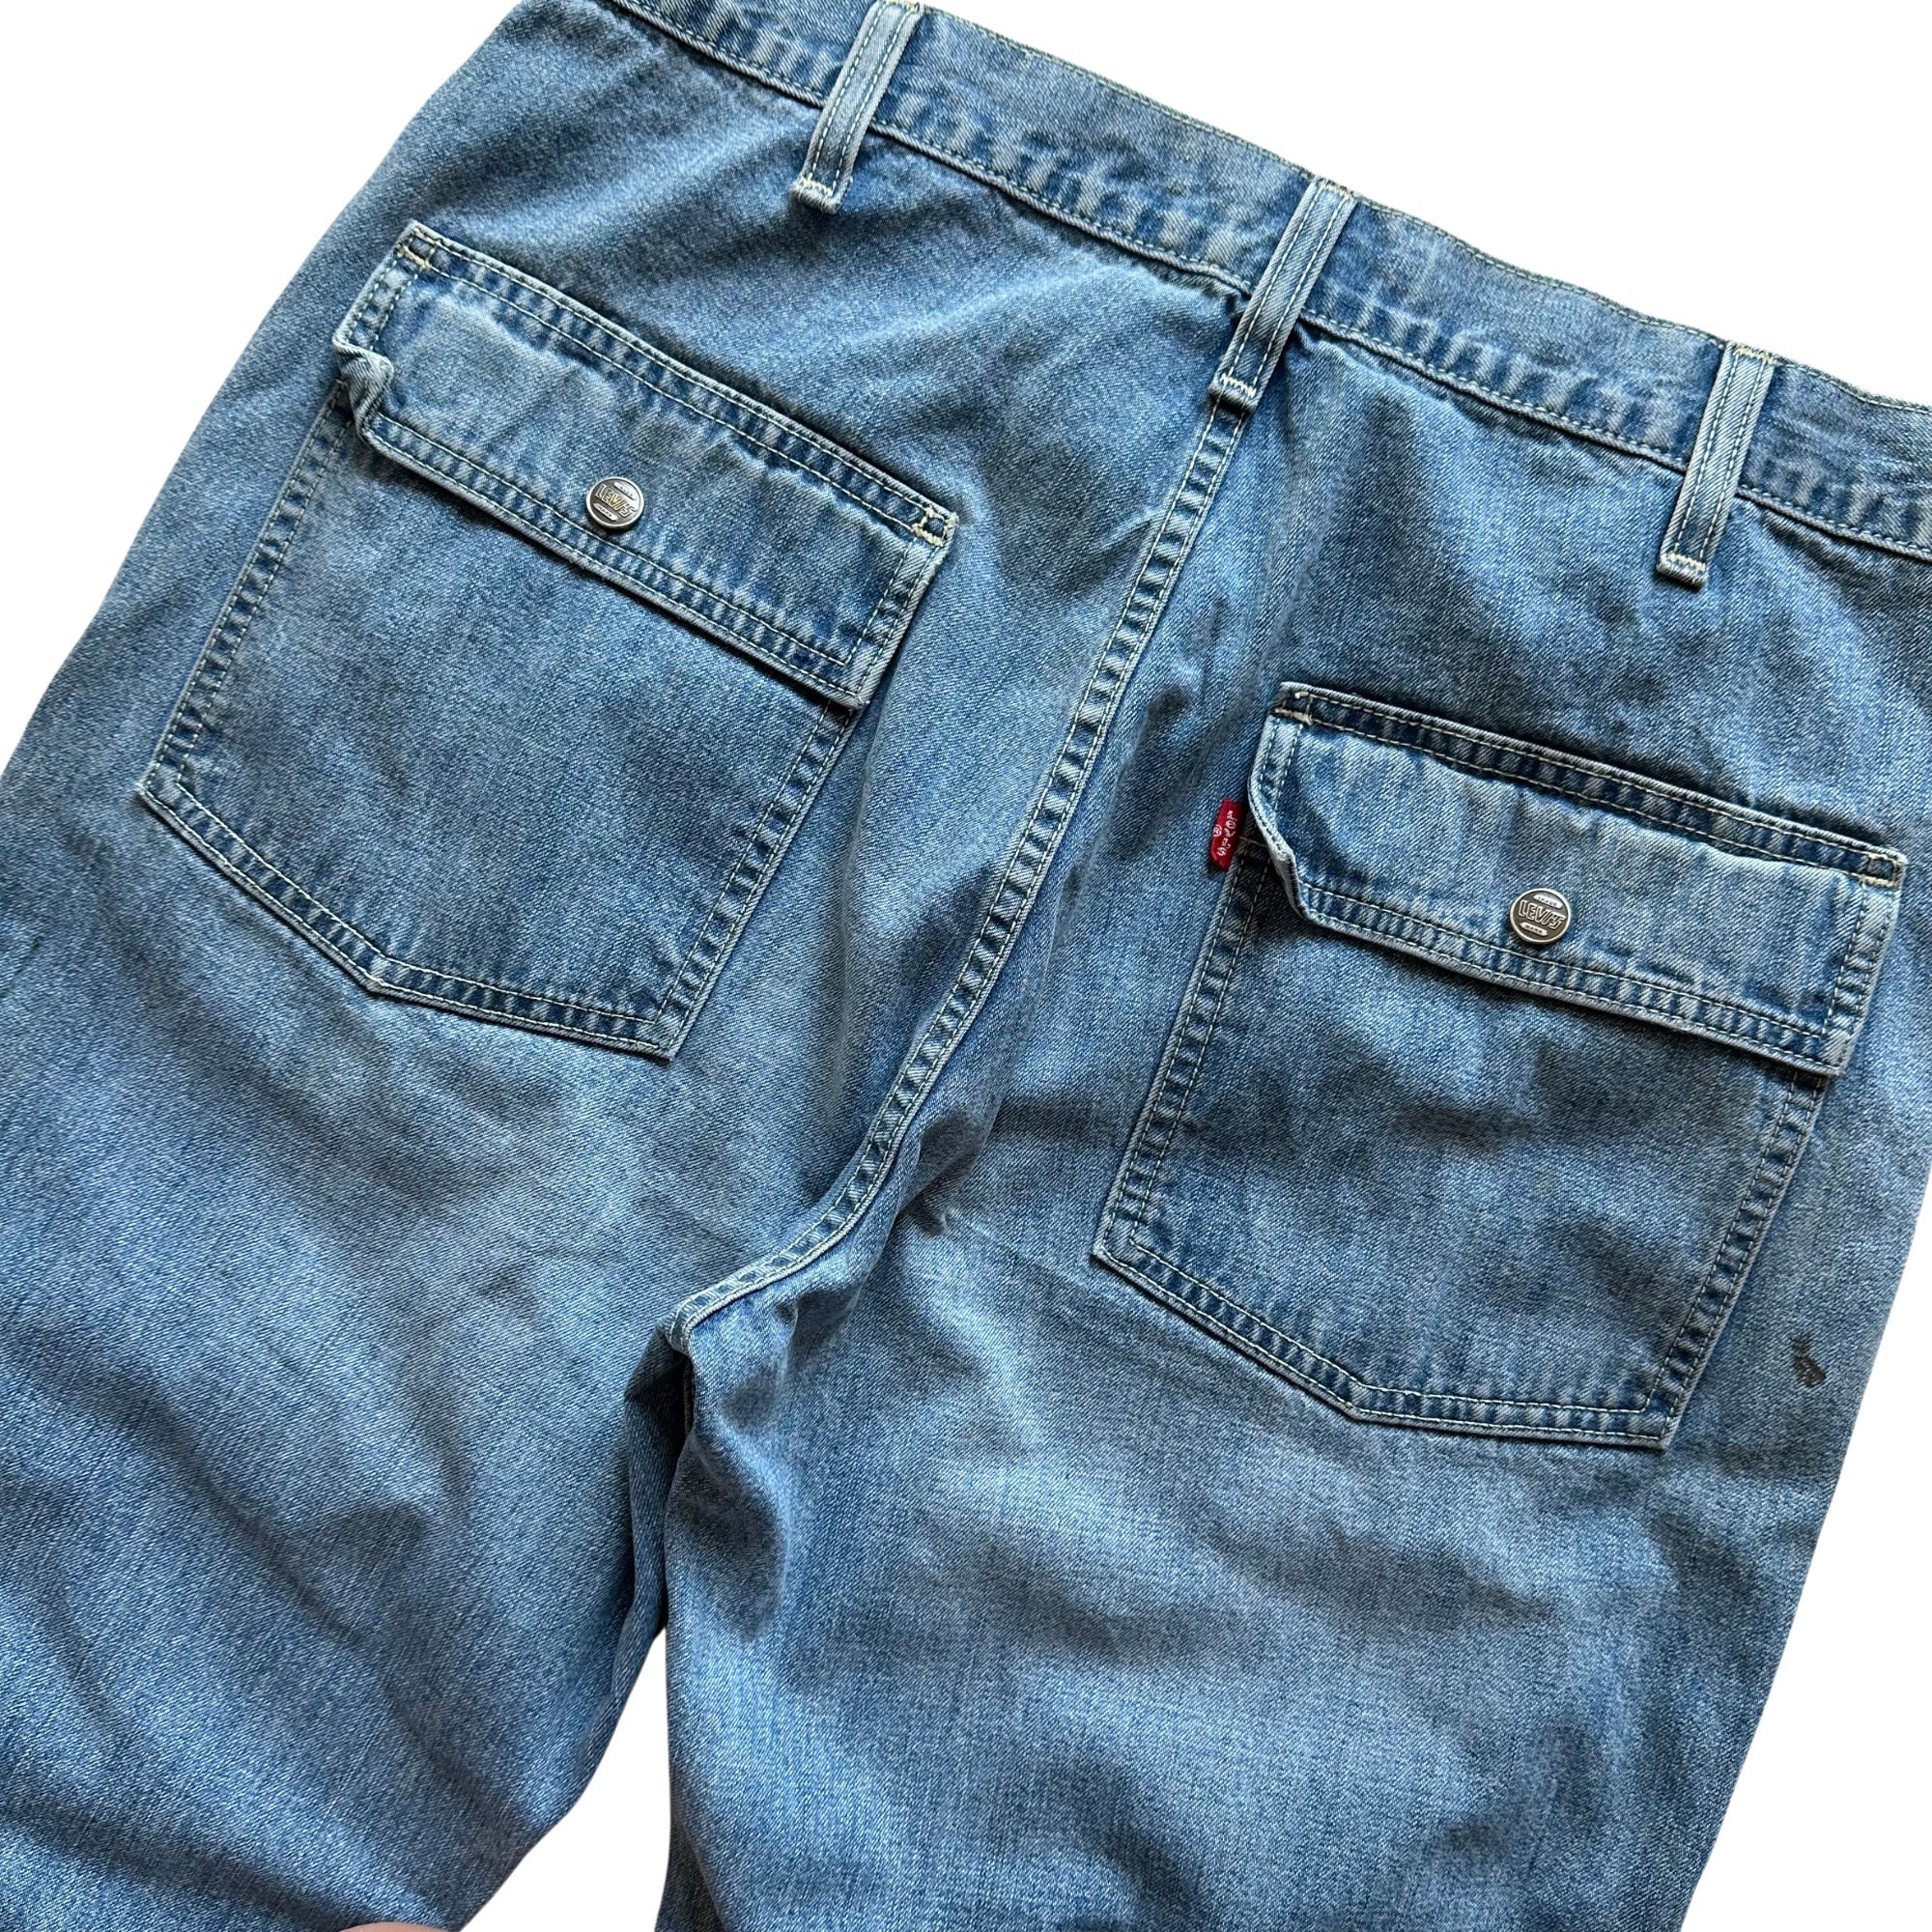 Levis LVC 37501 Vintage Big E Selvedge Denim Jeans -  Canada